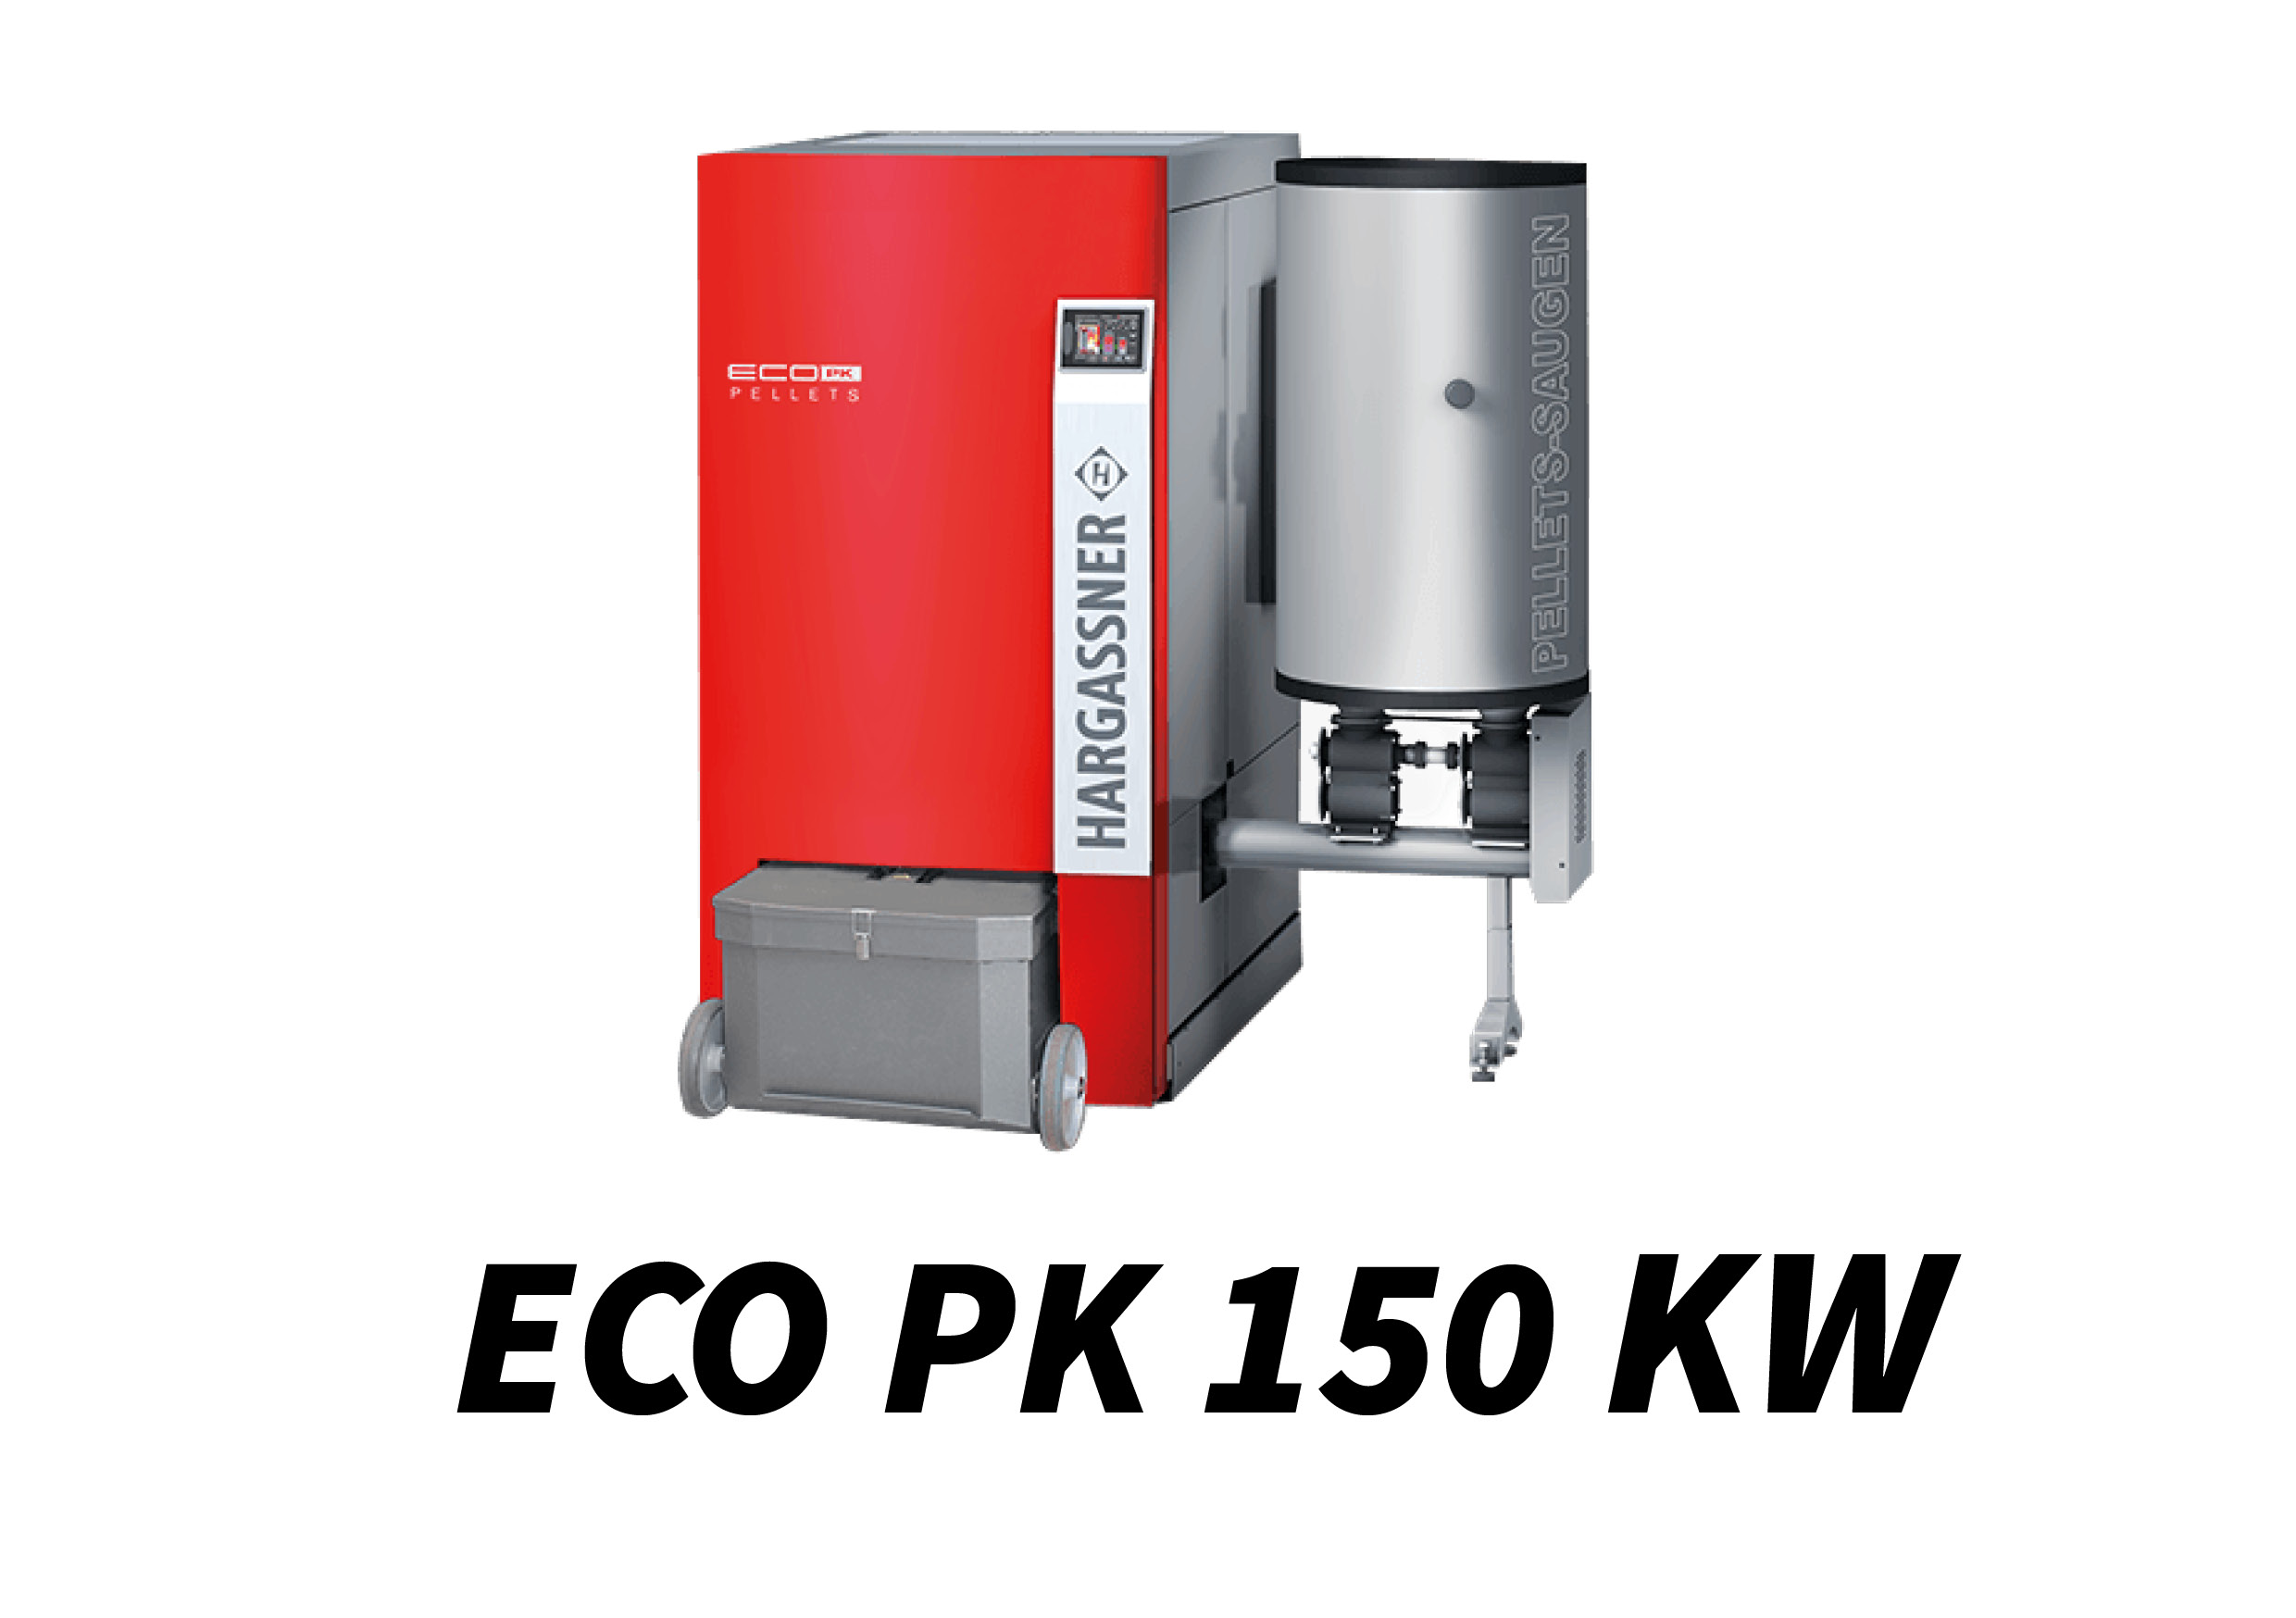 ECO PK 150 kW